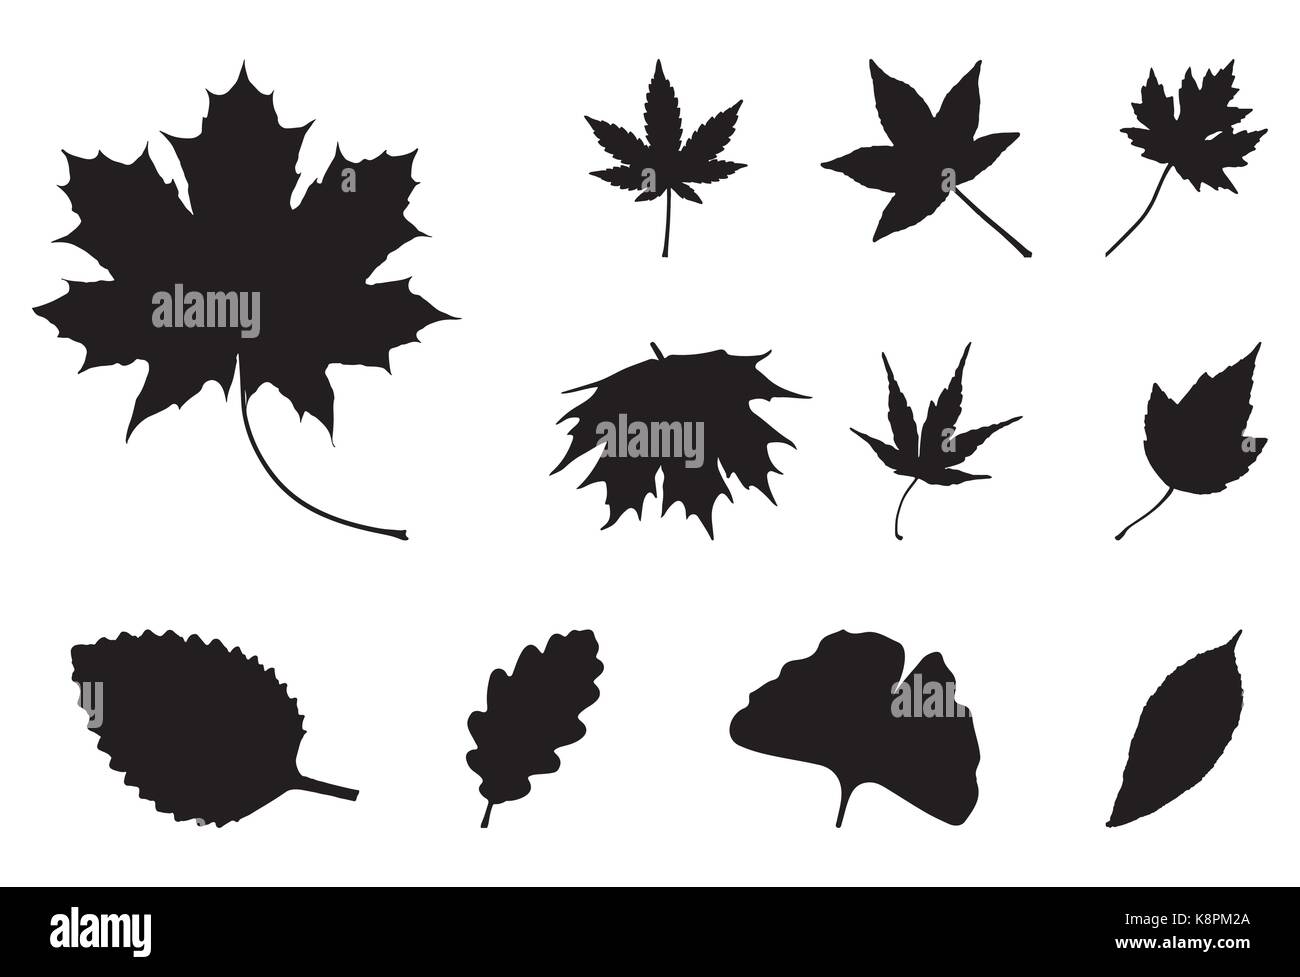 Oak leaf symbol Stock Vector Images - Alamy